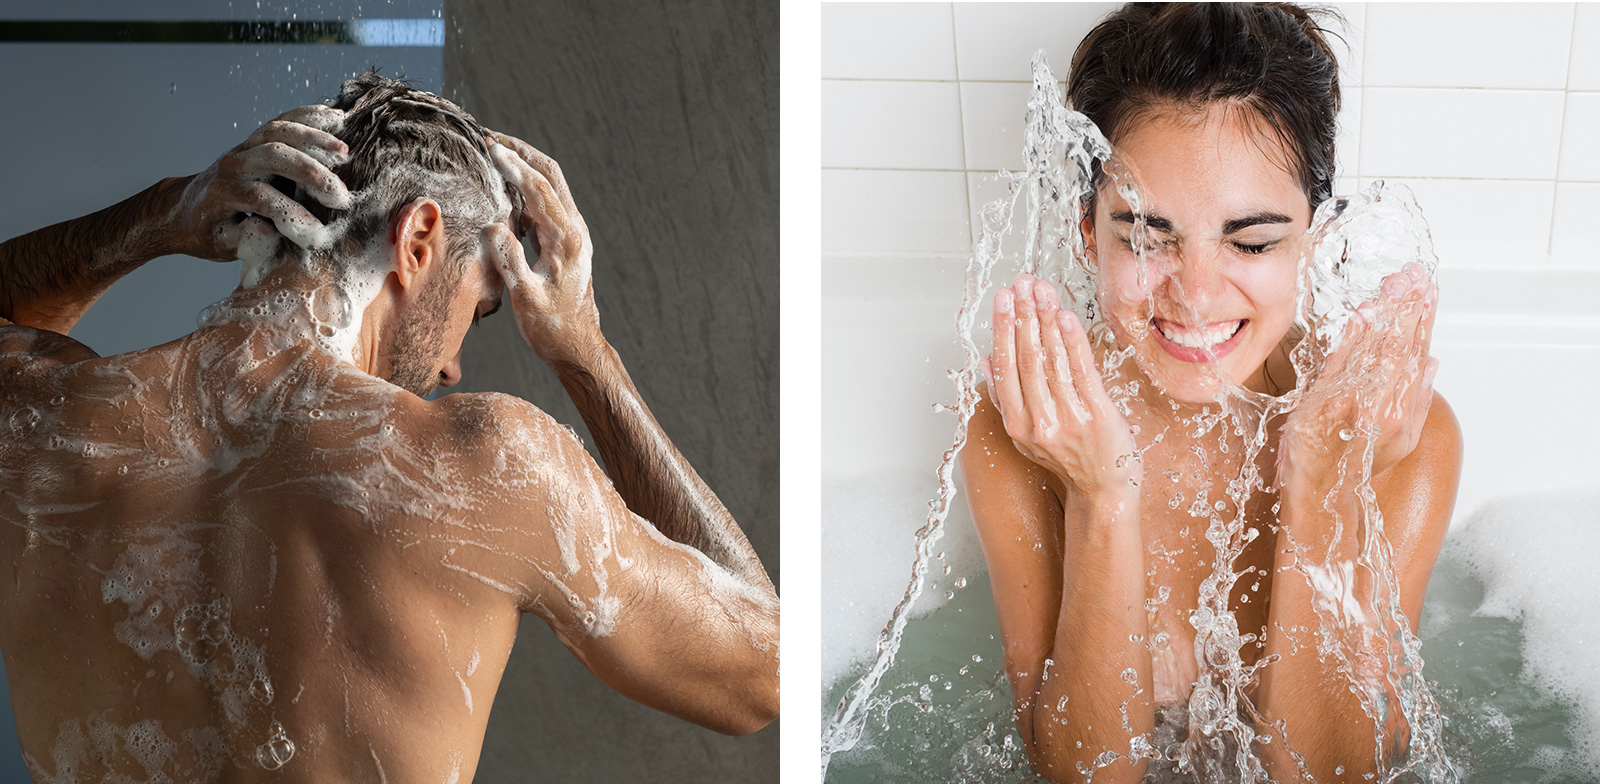 Duschen versus Baden: nach sieben Minuten kein Unterschied 